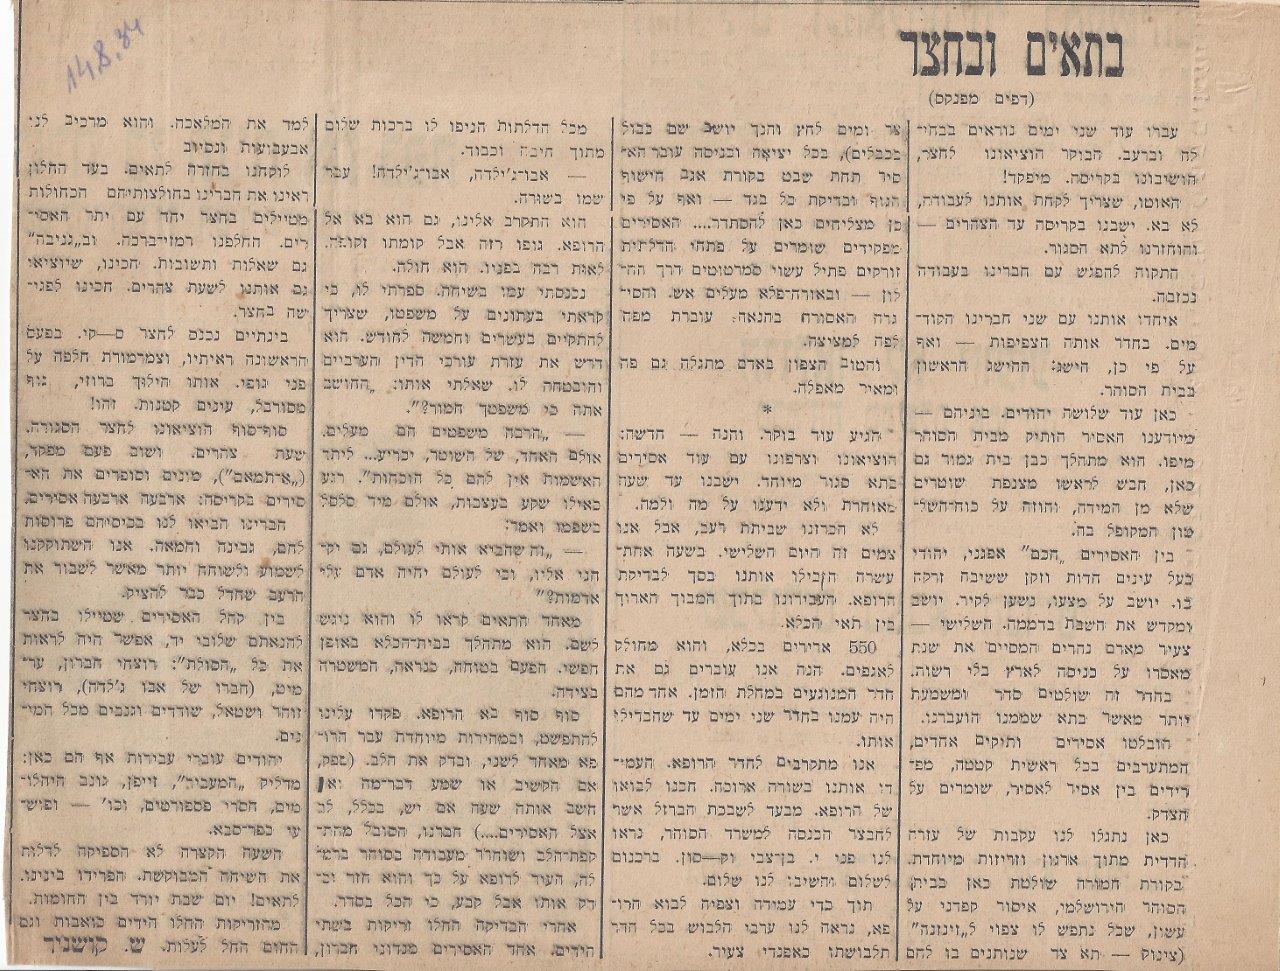 כאן אסור לחשוב! מאת שמעון קושניר, דבר,  14 אוגוסט, 1934